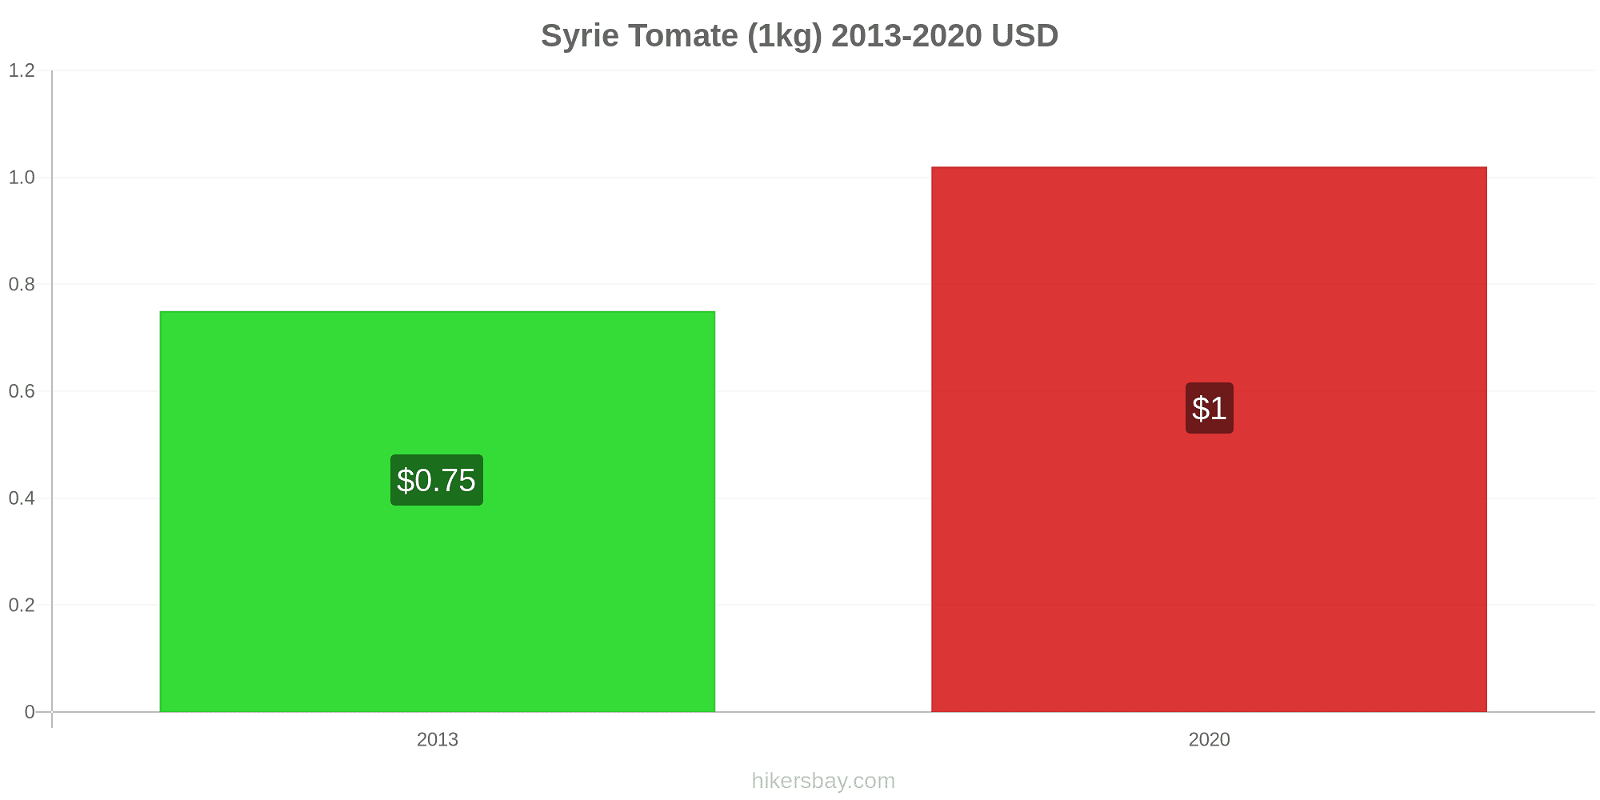 Syrie changements de prix Tomate (1kg) hikersbay.com